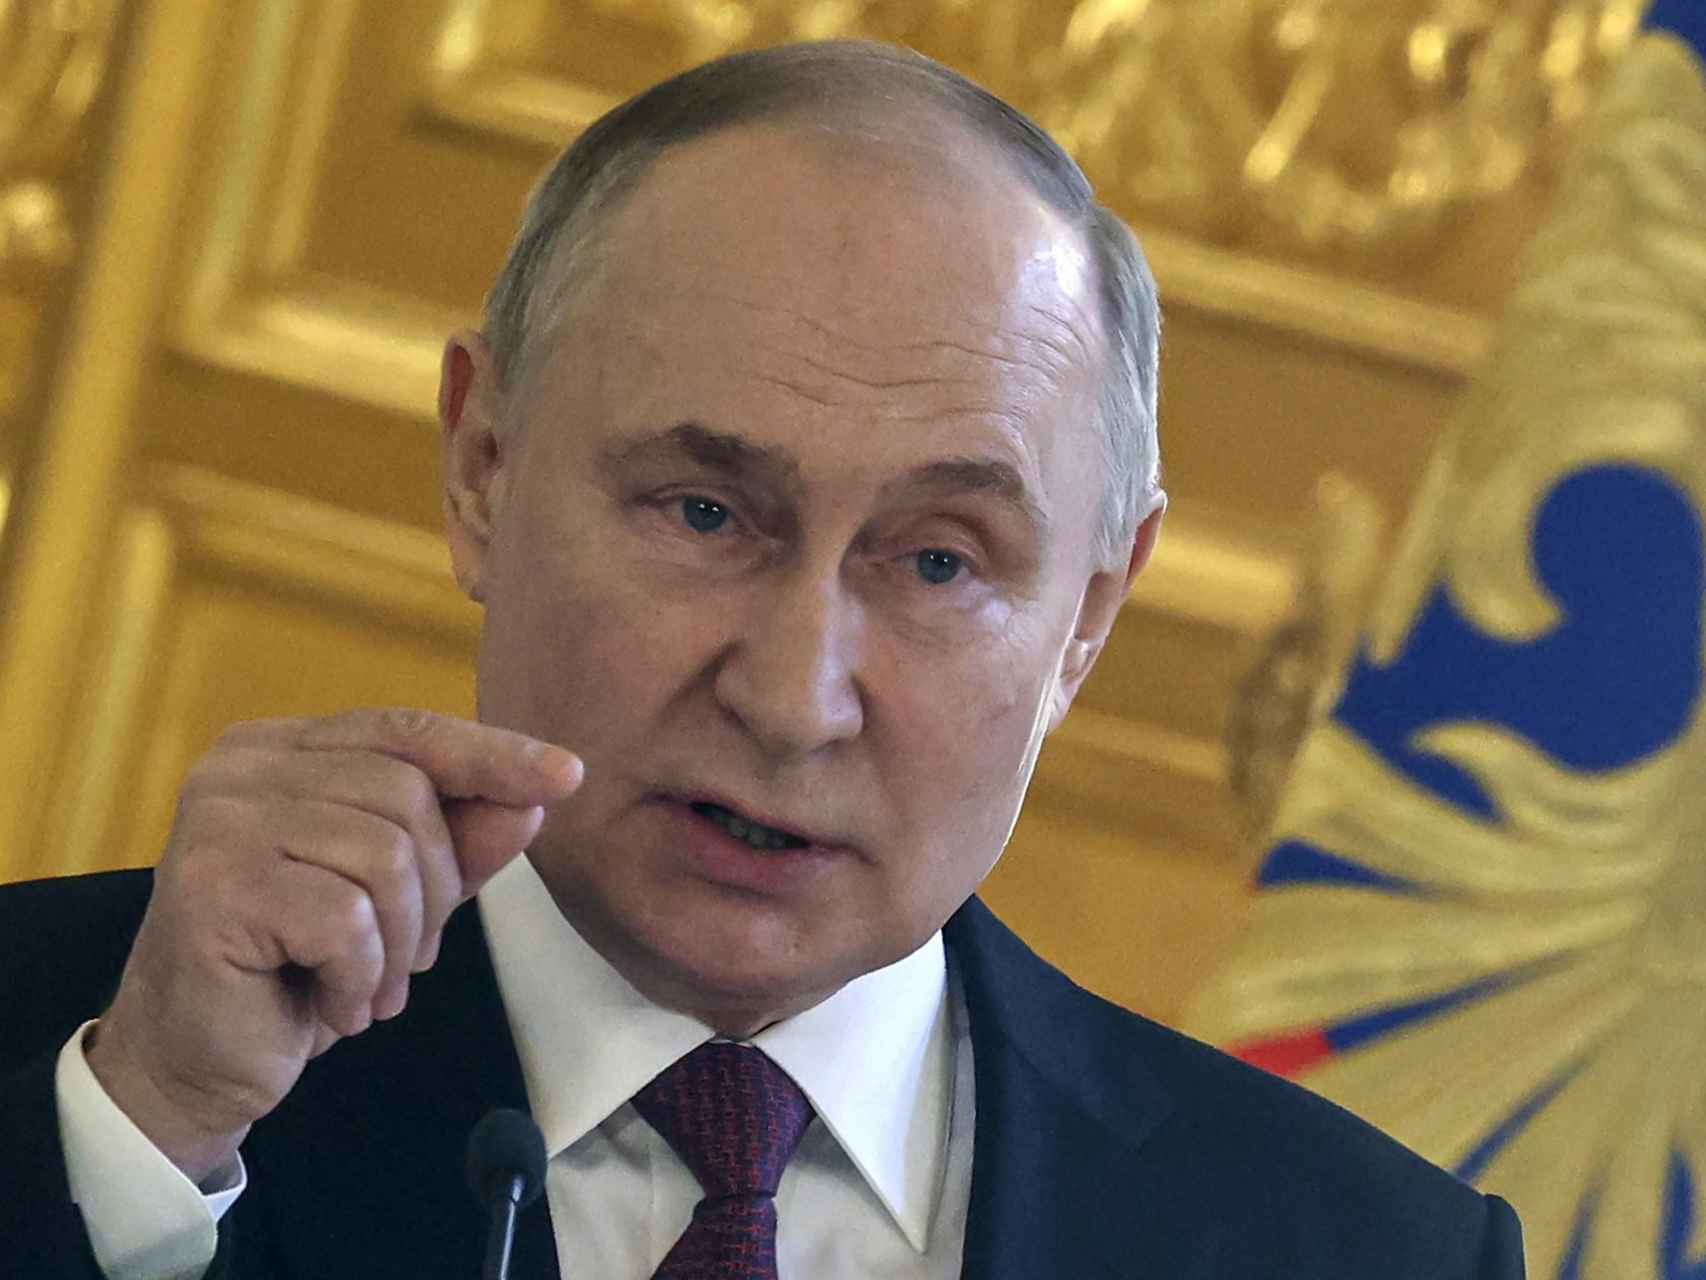 El presidente ruso, Vladímir Putin, este sábado durante su alocución en televisión tras el atentado islamista en Rusia.